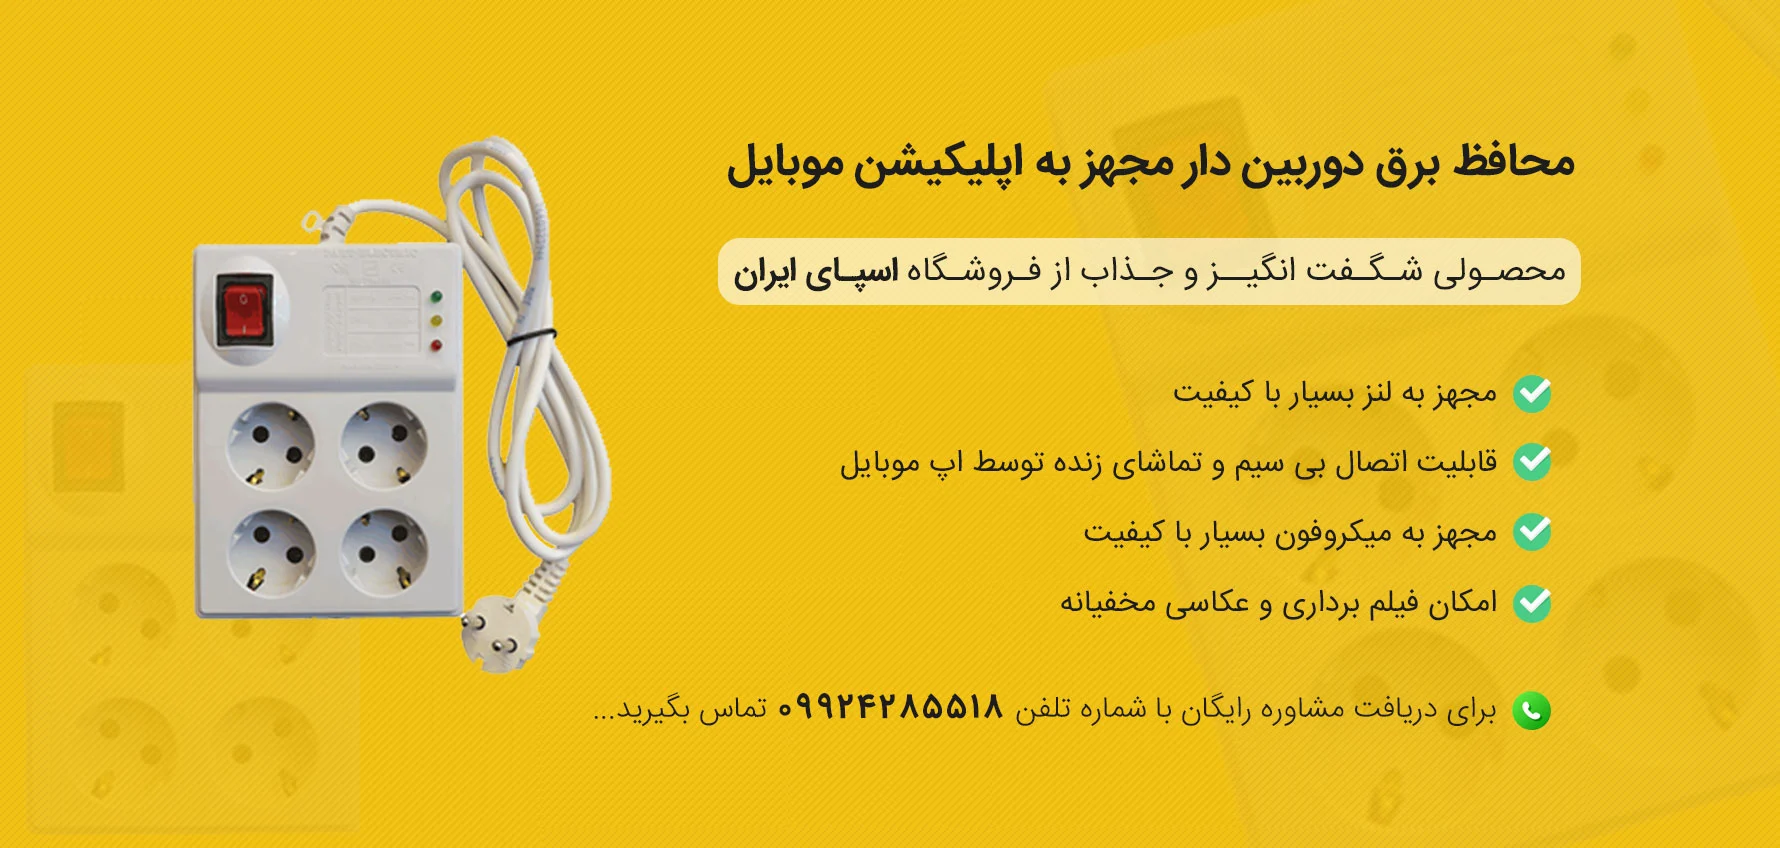 خرید محافظ برق دوربین دار اصل از سایت اسپای ایران